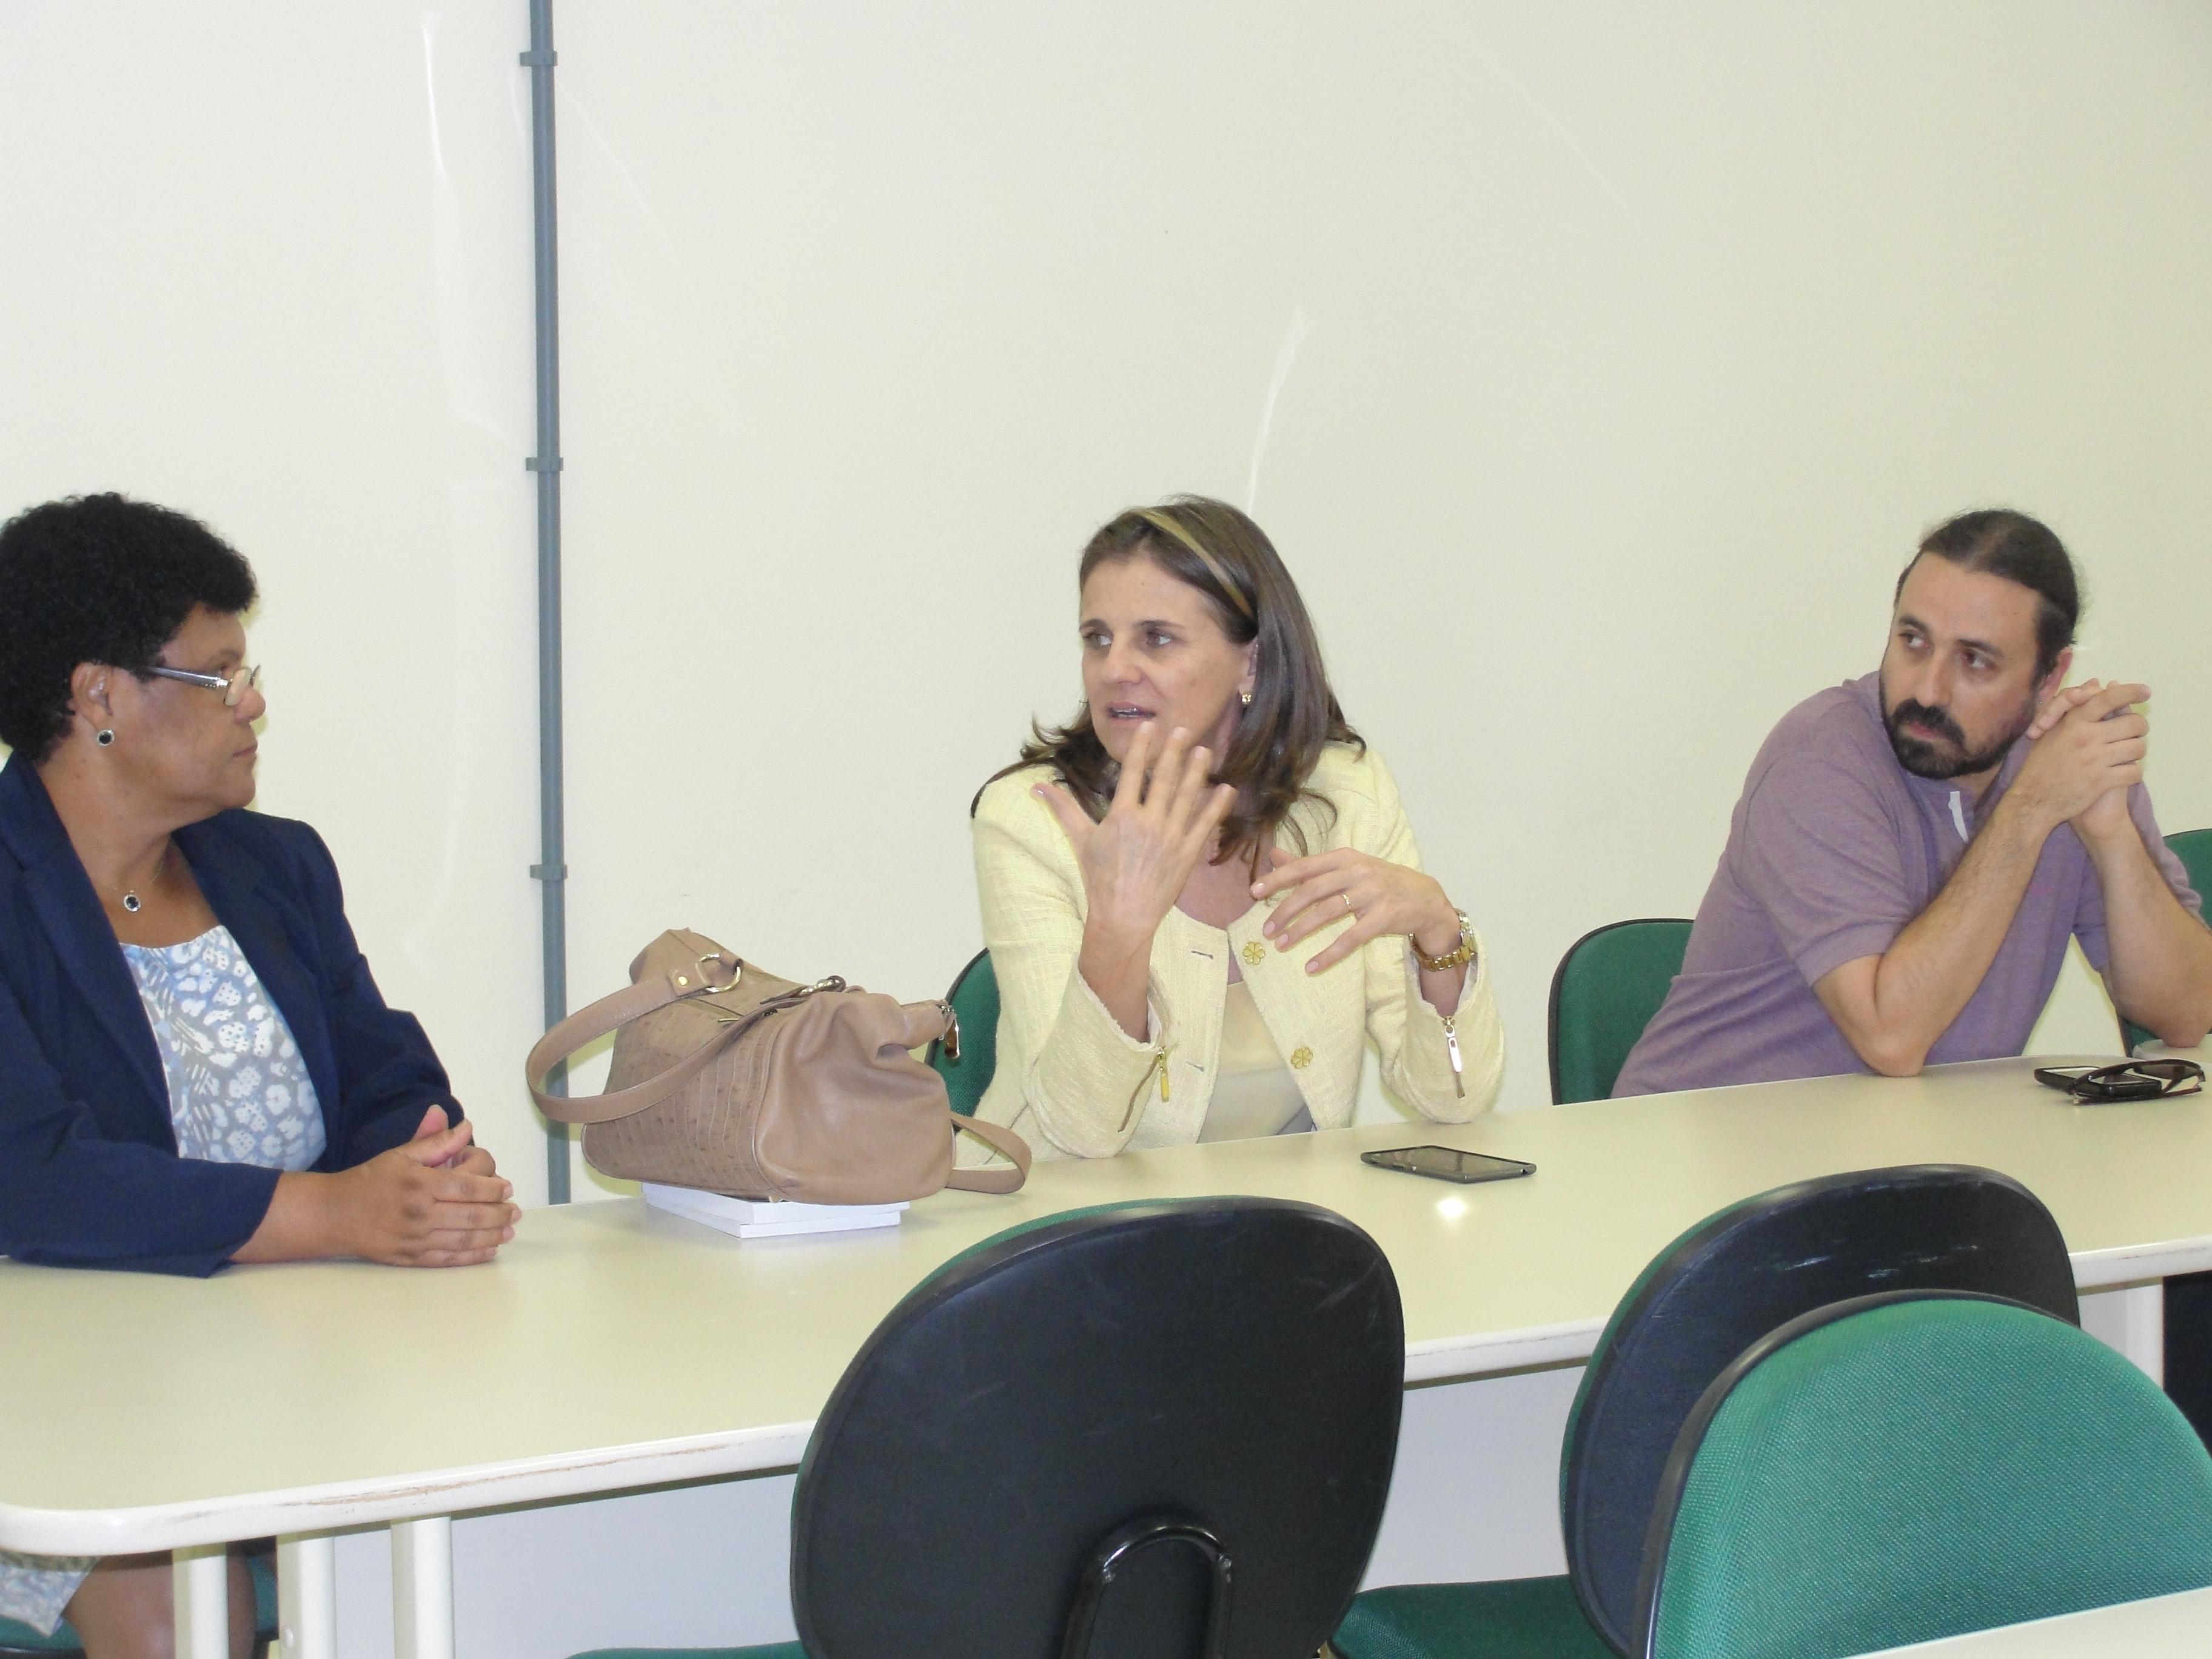 Reunião na Unipampa, com a professora Joana da Luz à esquerda, reitora Ulrika Arns ao centro e professor Fábio Corniani à direita